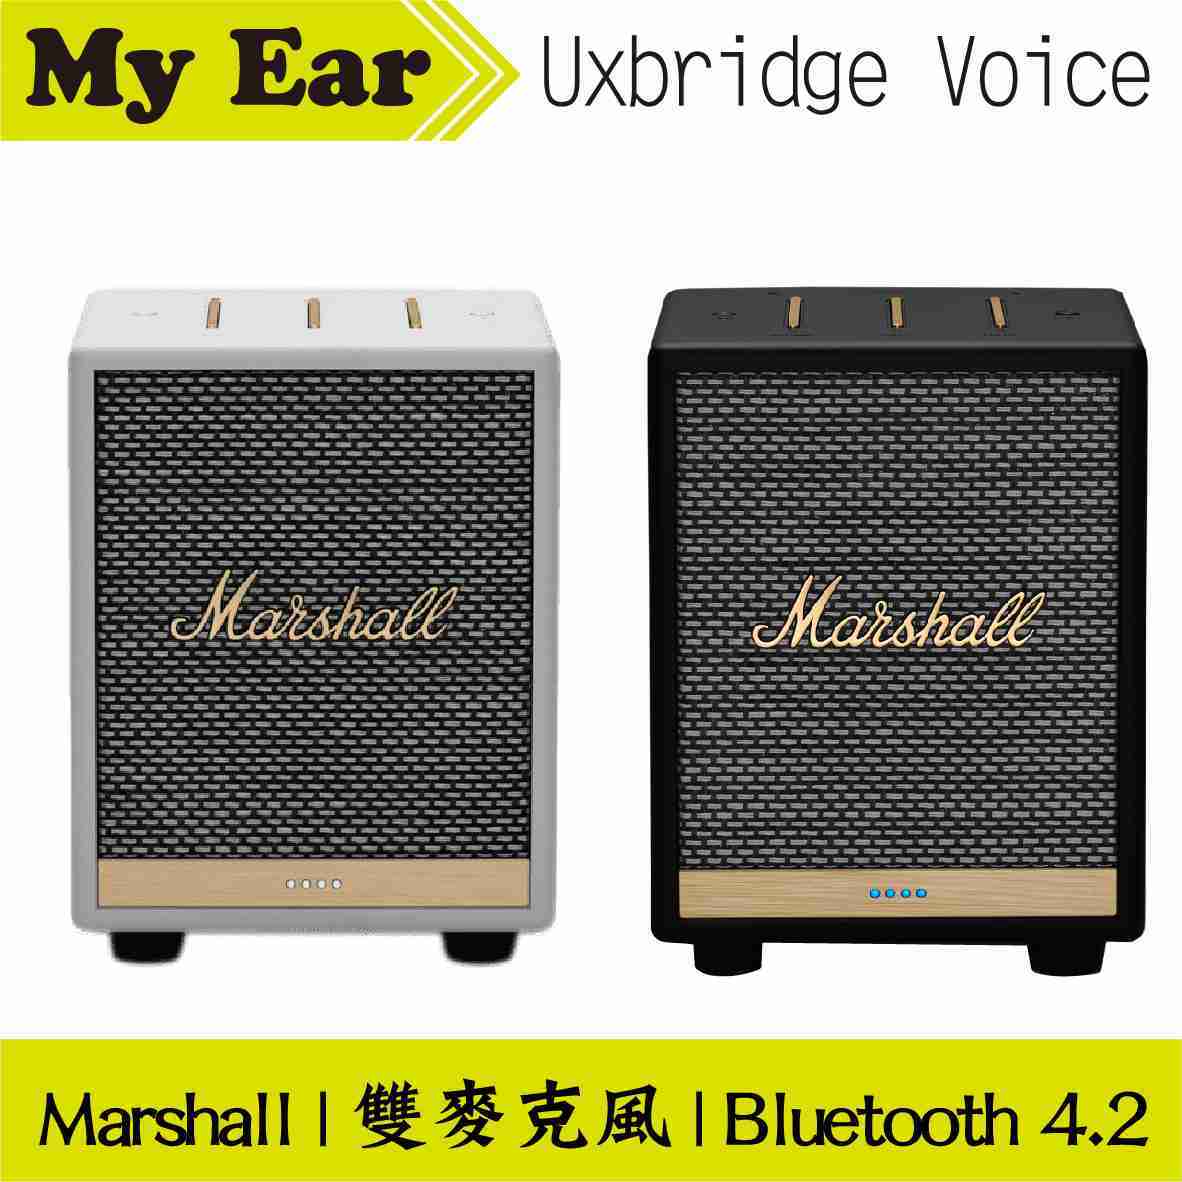 Marshall 馬歇爾 Uxbridge Voice 雙麥克風 藍芽 智慧 喇叭 | My Ear 耳機專門店